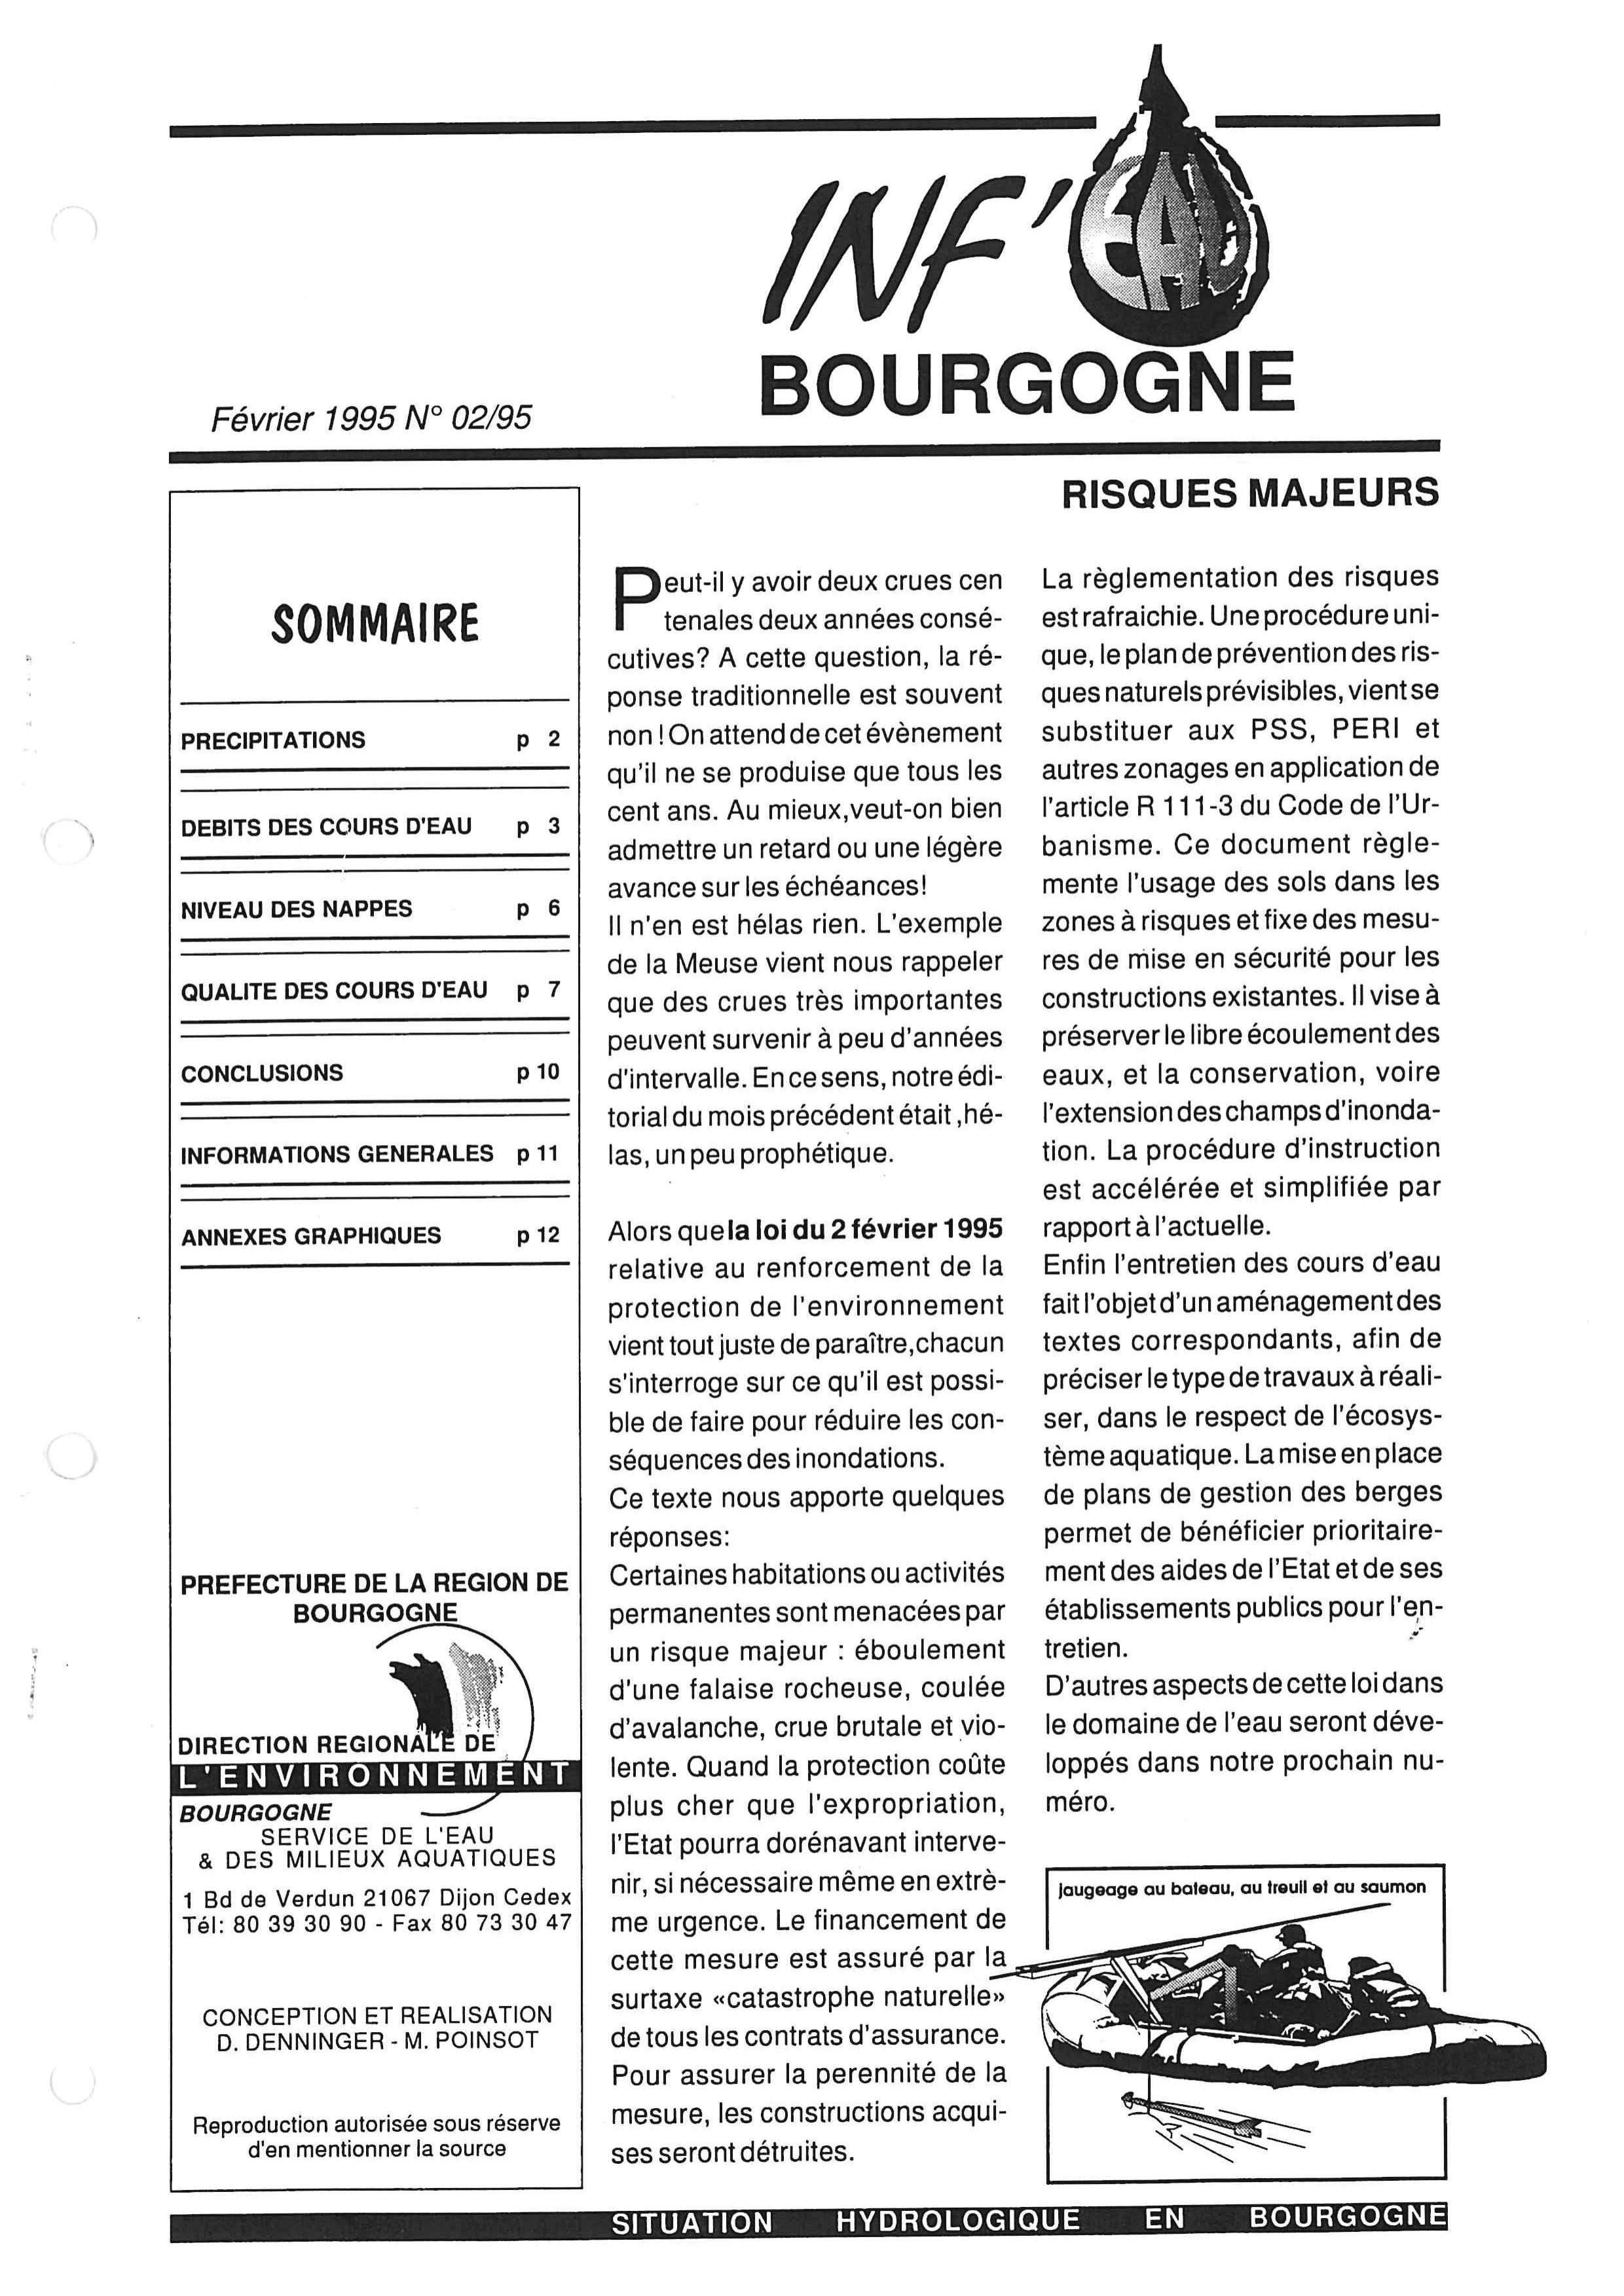 Bulletin hydrologique du mois de janvier 1995